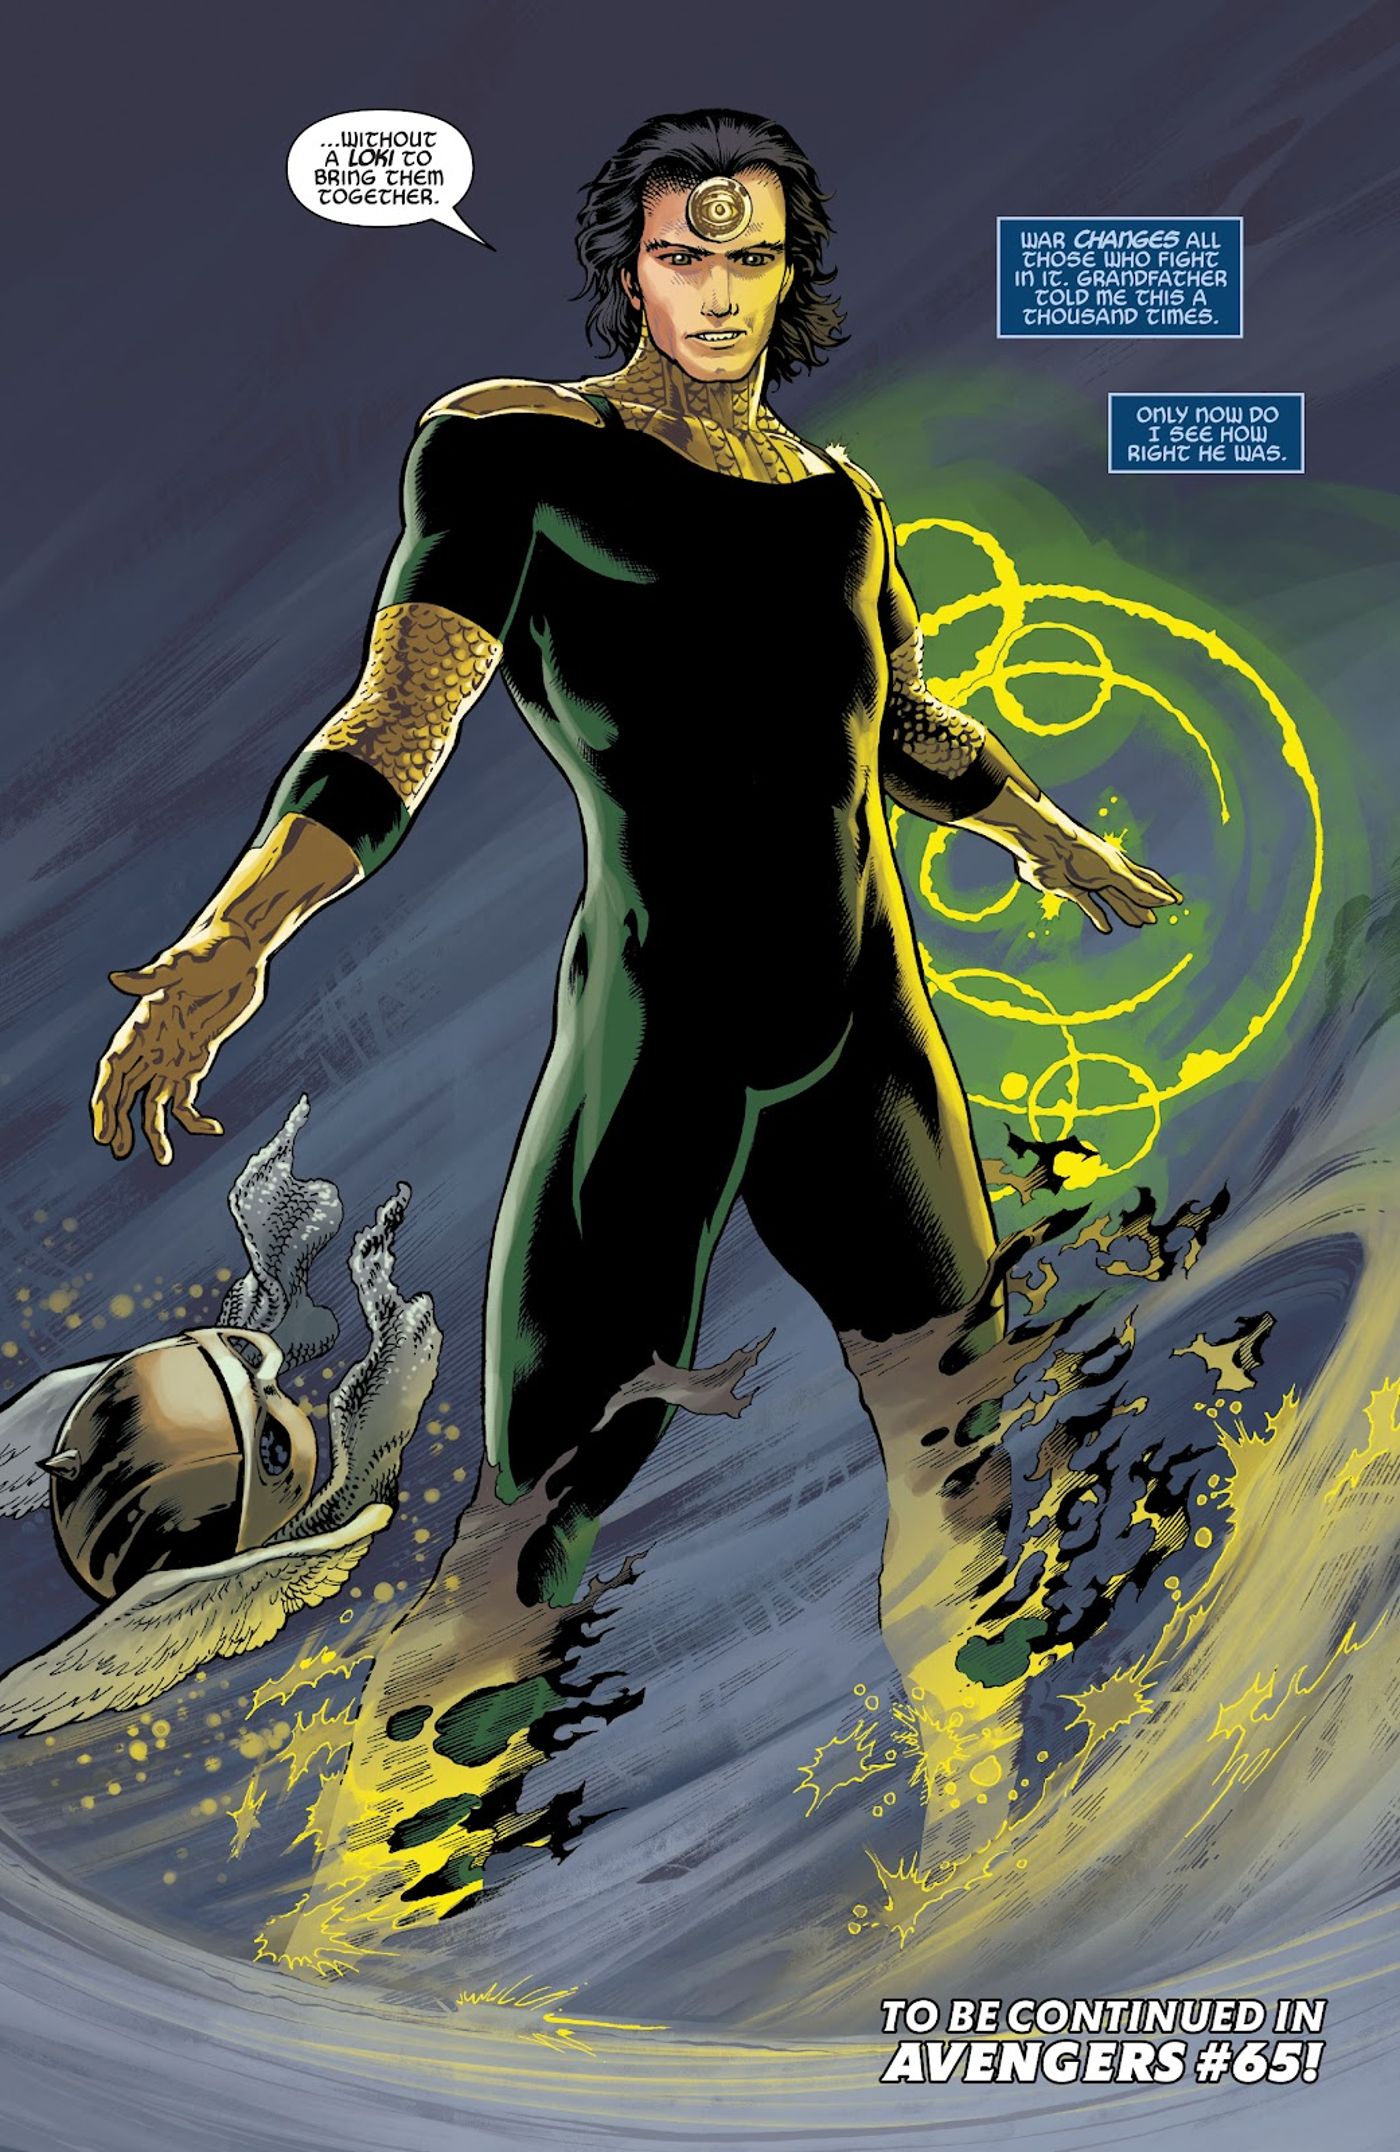 avenger prime reveals himself as Loki